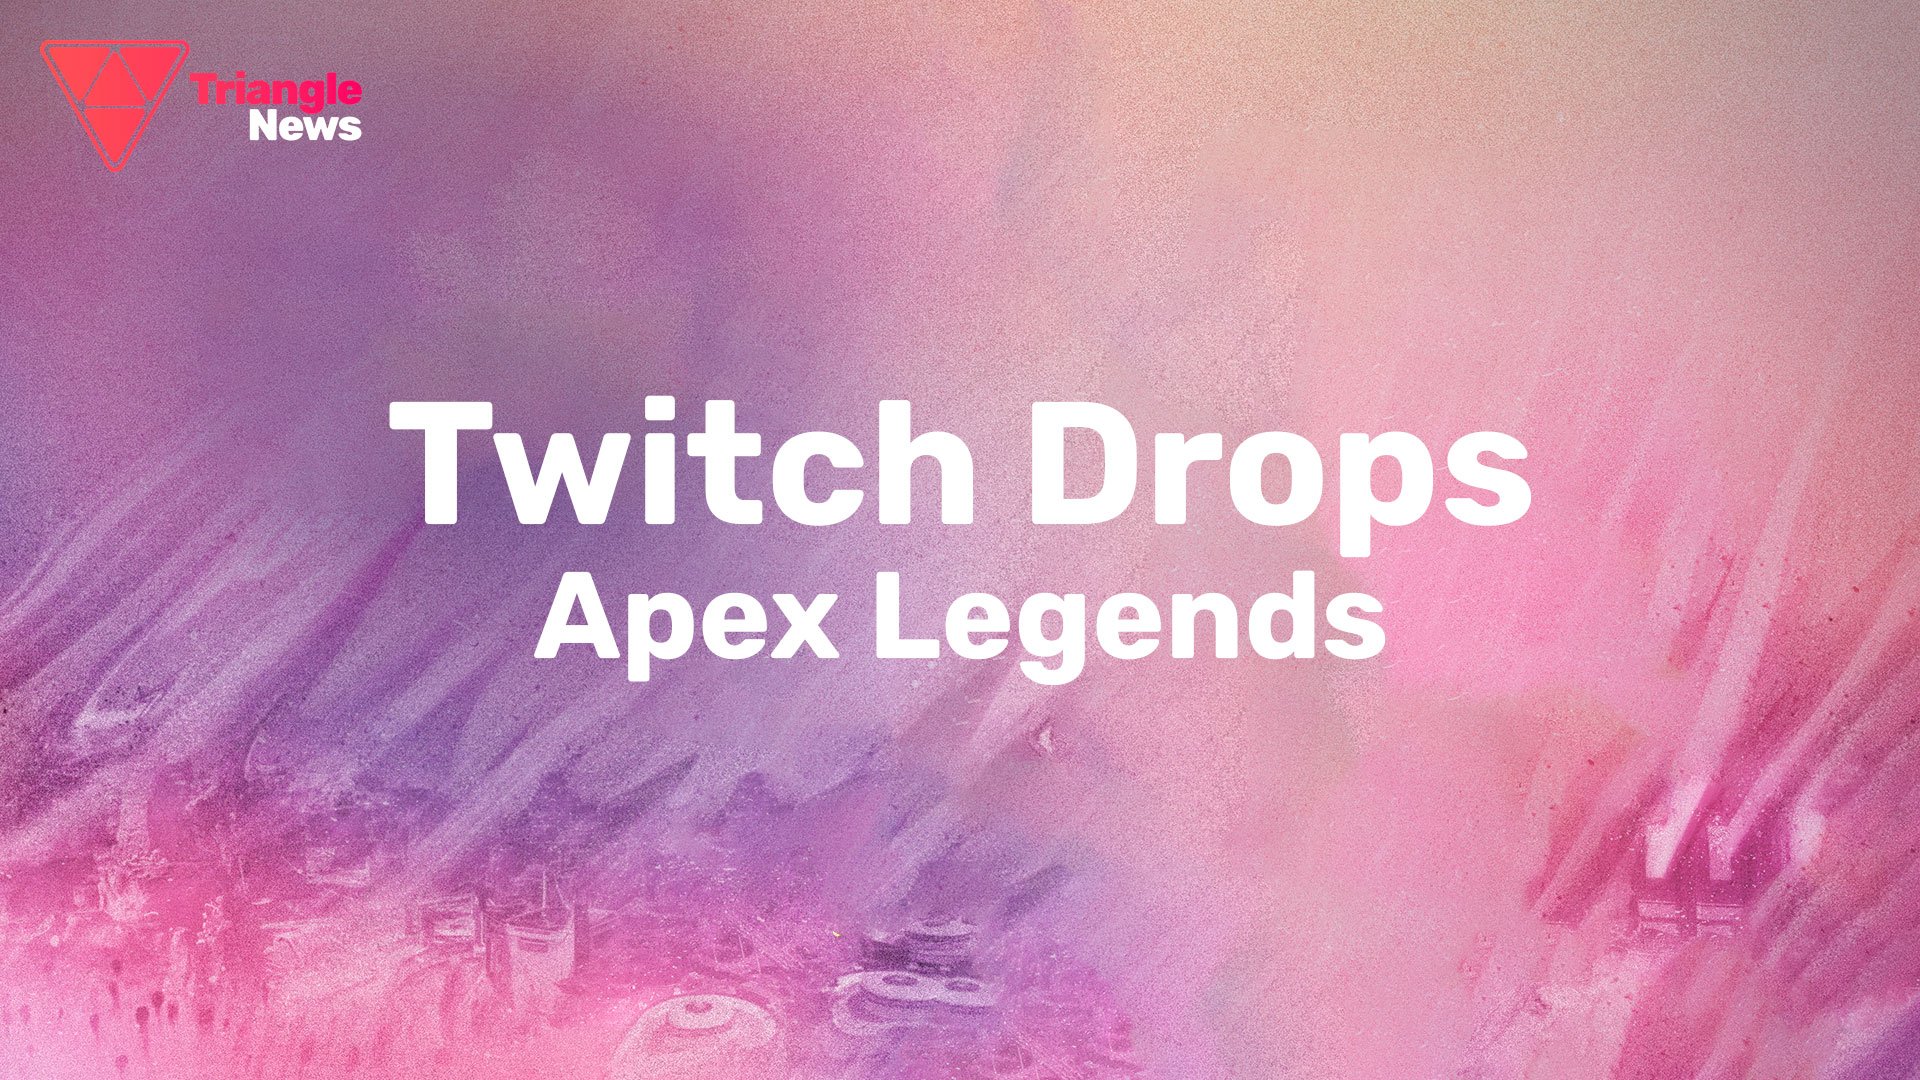 Разработчики Apex Legends решили устроить раздачу большого количества внутриигровых наград Twitch Drops за просмотр трансляций.